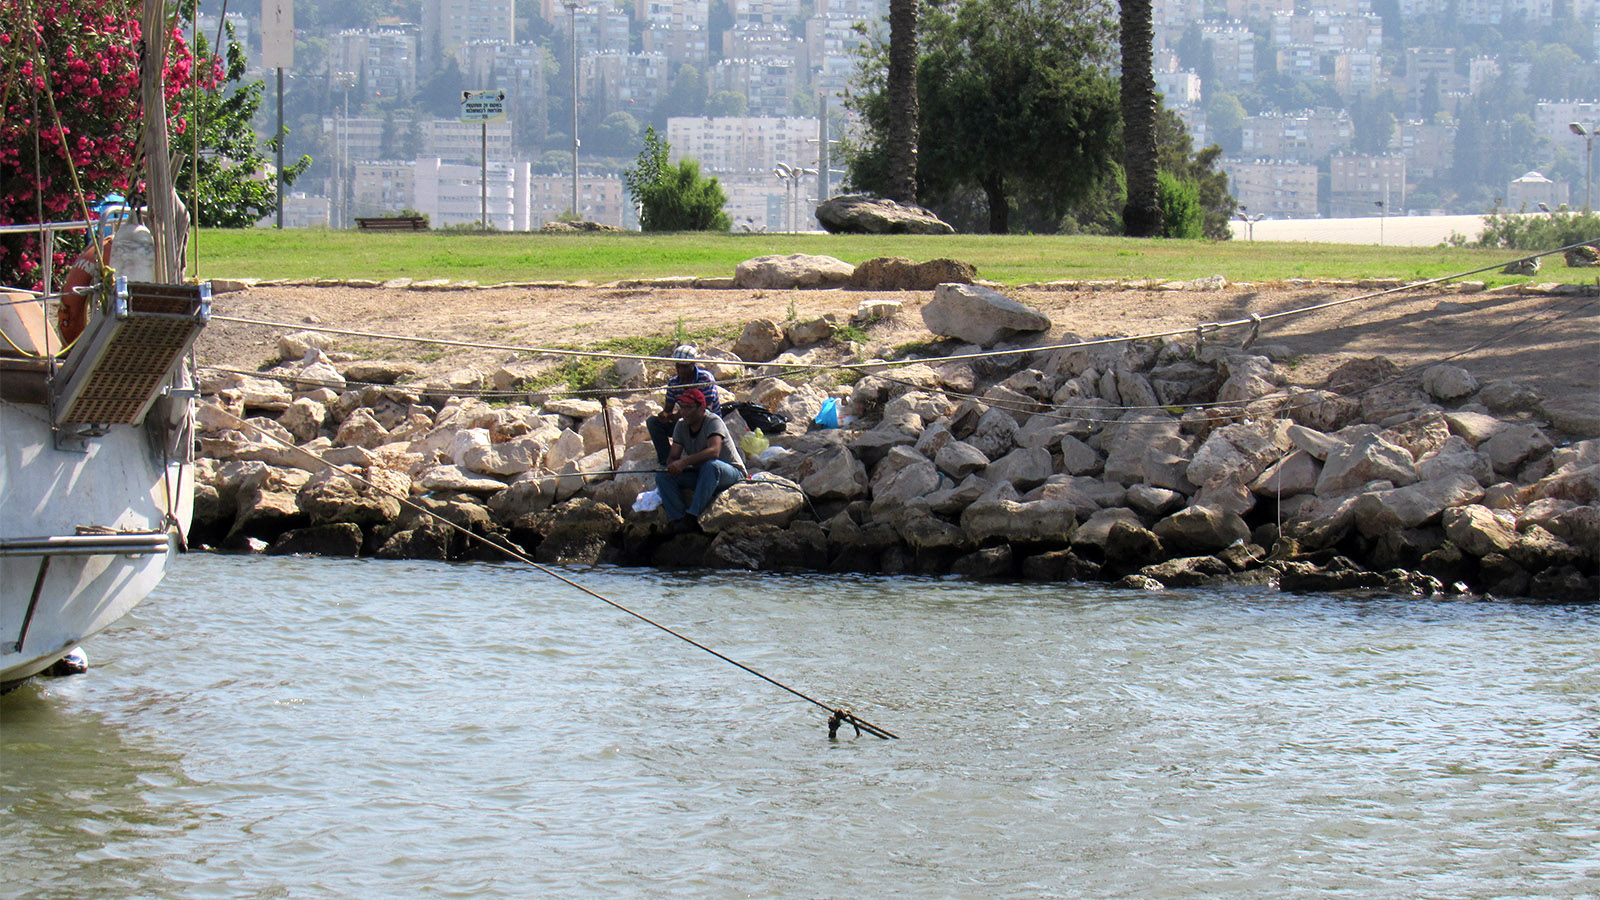 דייגים בקישון (צילום: ארז רביב)